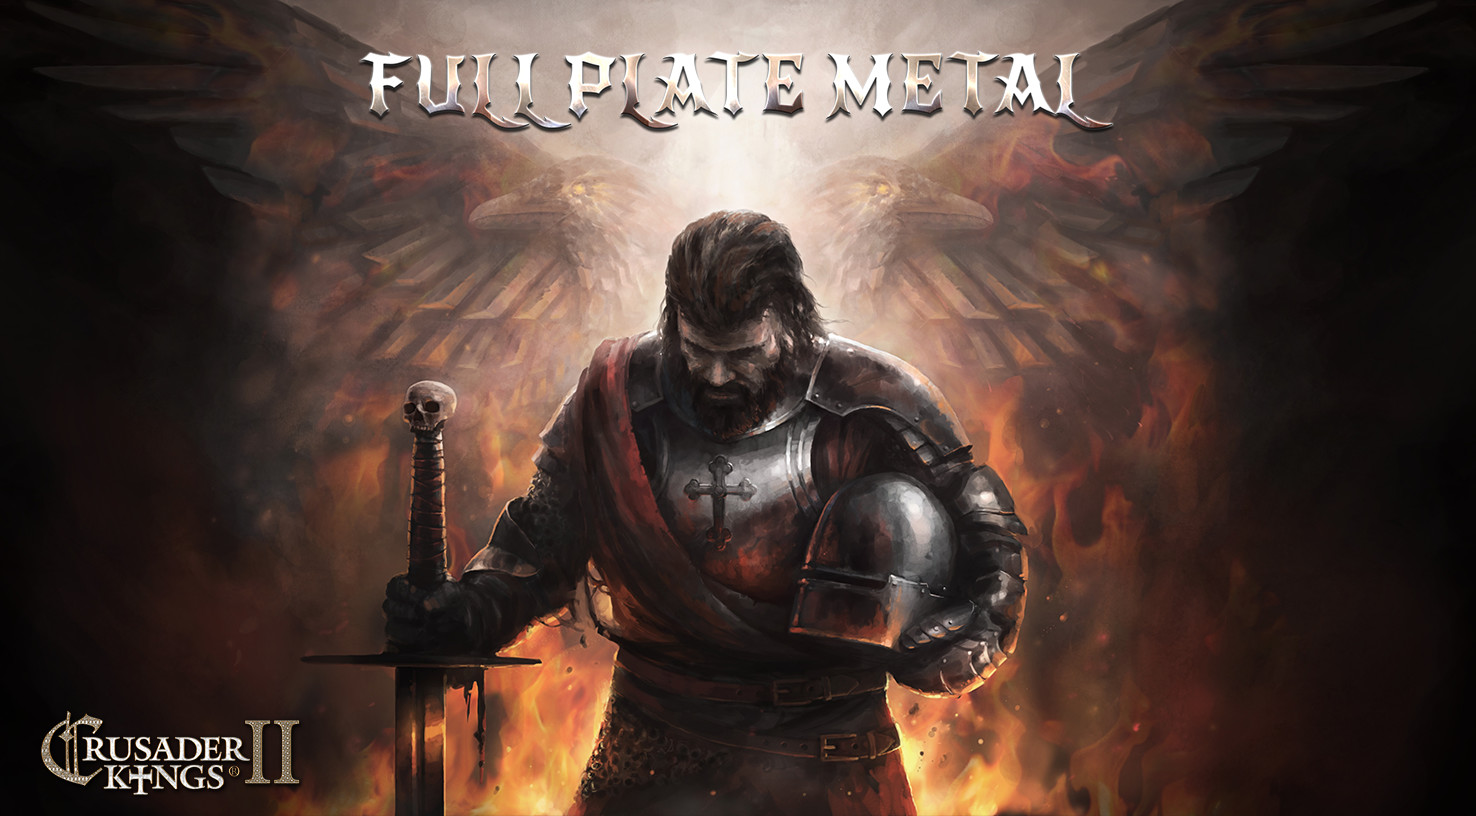 Crusader Kings II - Full Plate Metal DLC Steam CD Key, $1.84